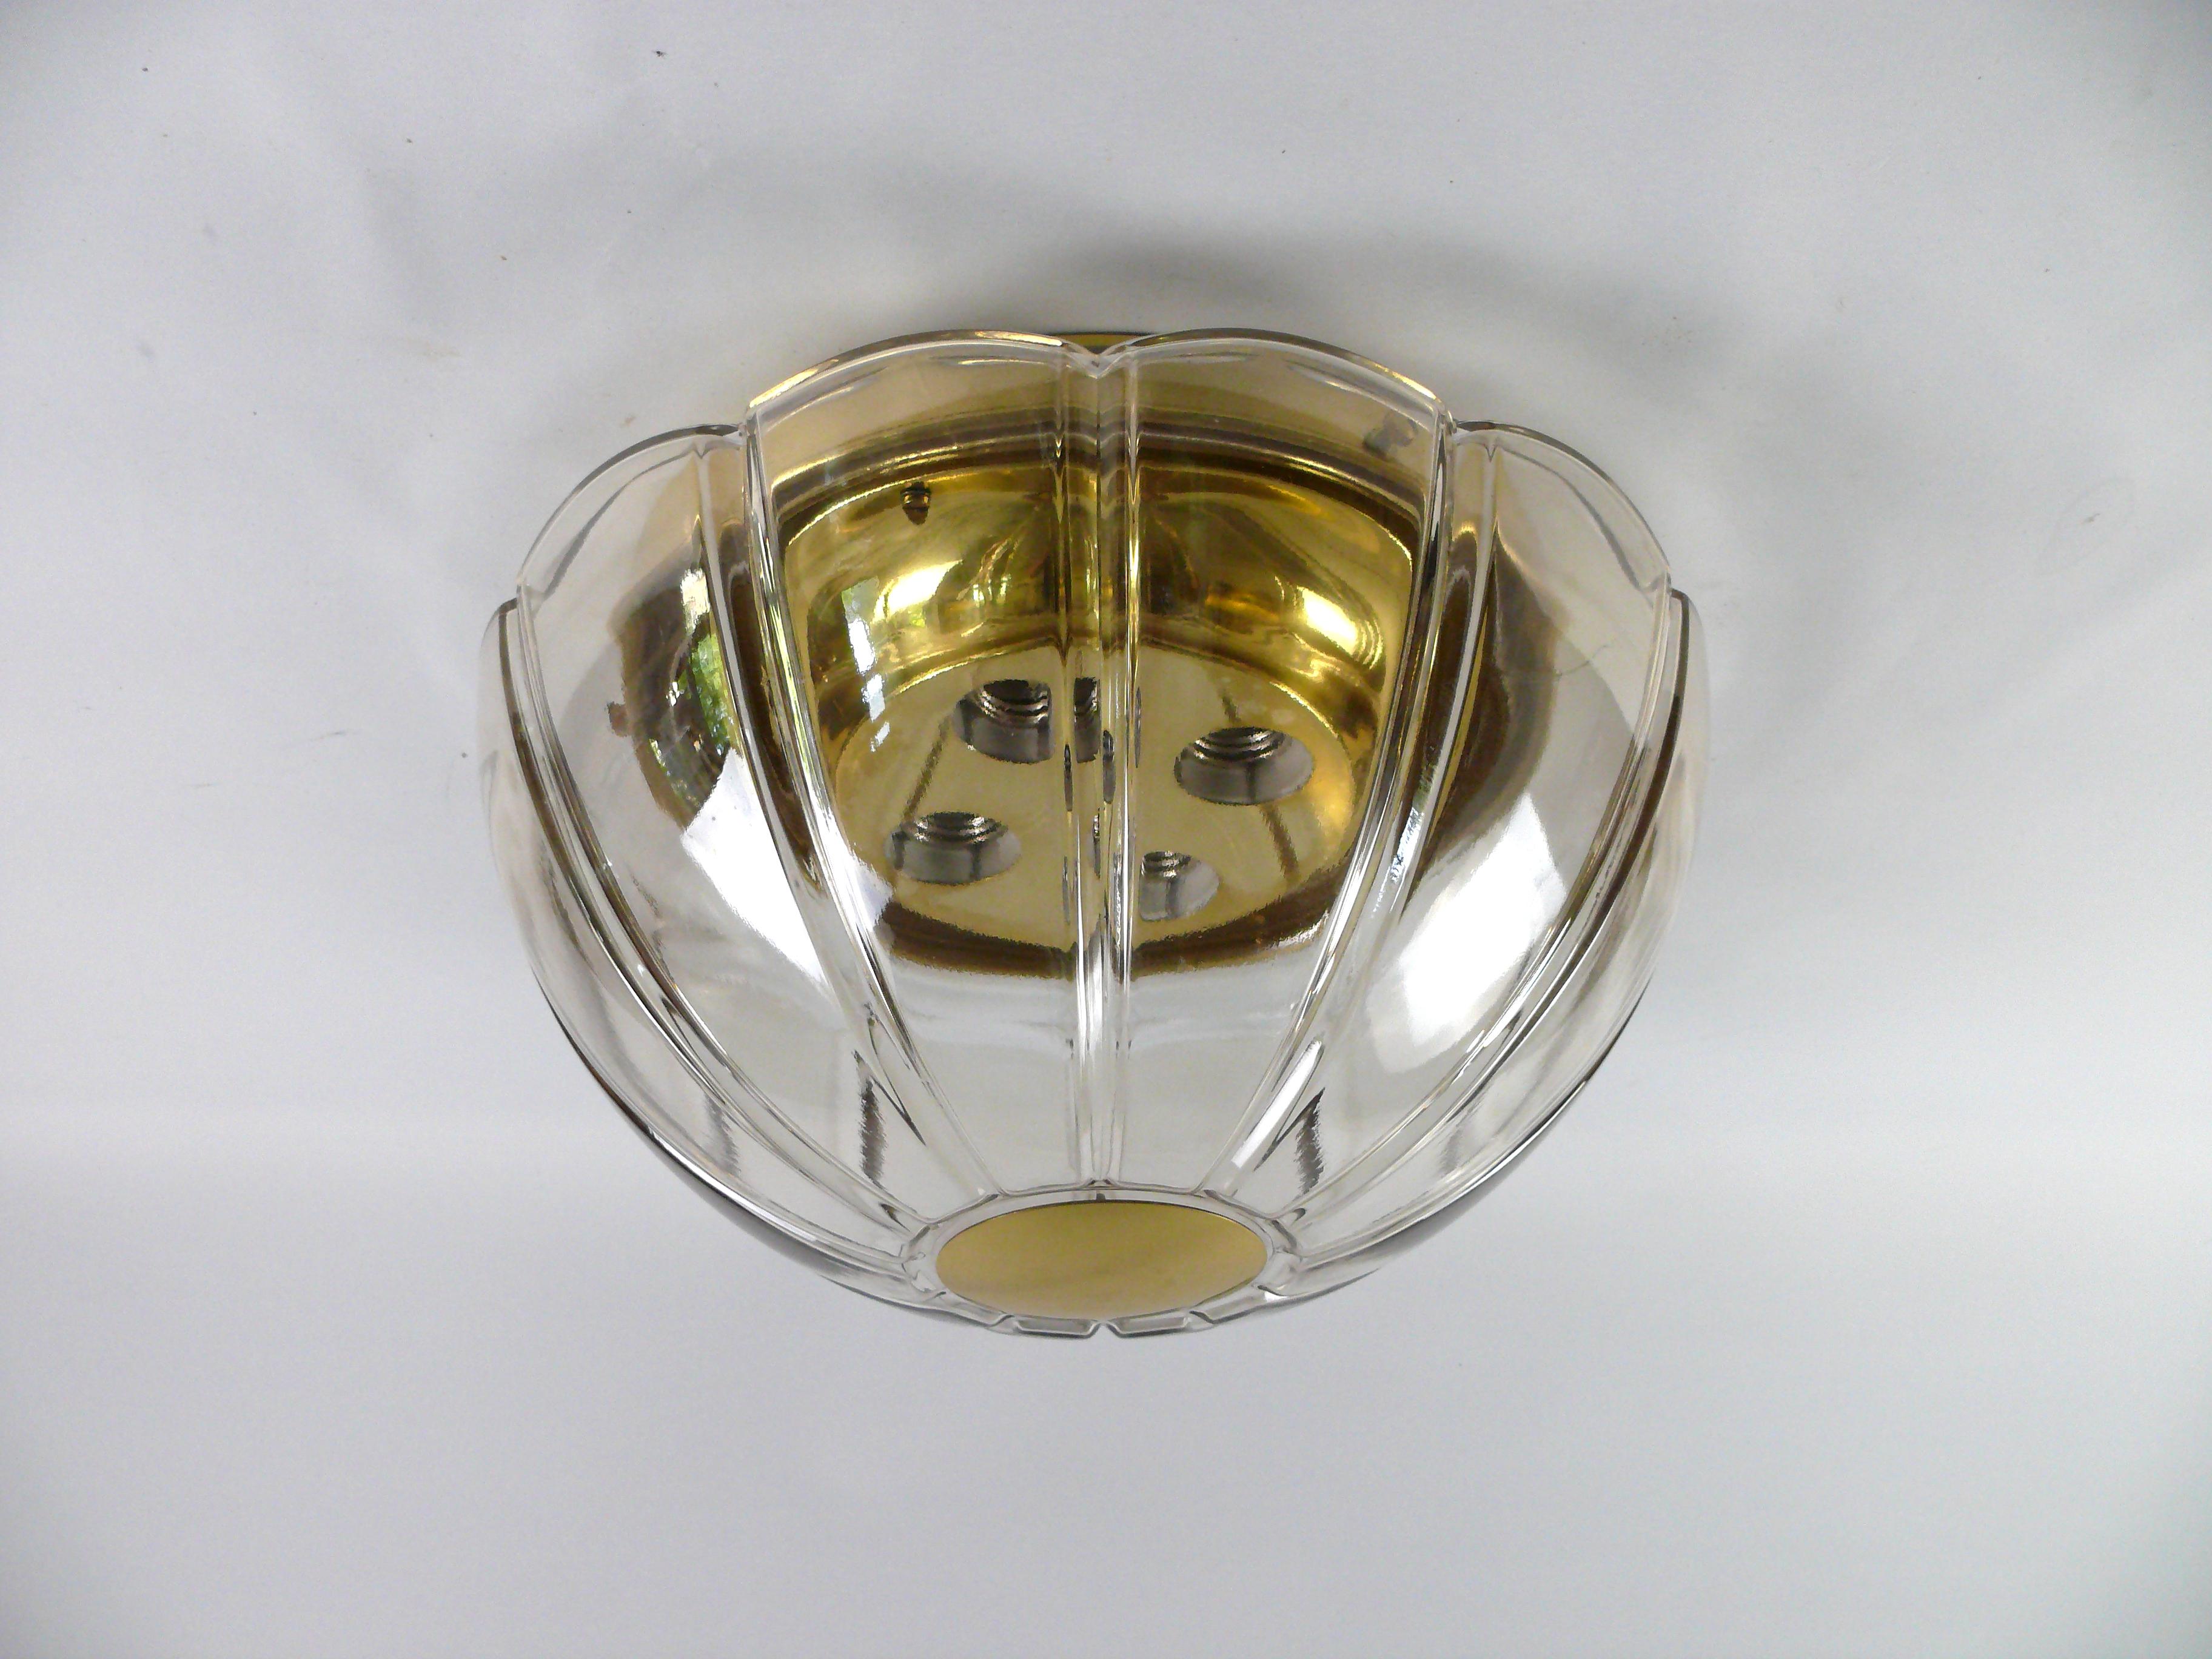 Lampe originale des années 1960 de la société Glashütte Limburg, Allemagne - modèle 3142 - voir photo. La lampe est en laiton et en verre fumé clair. Il peut être fixé aussi bien au plafond qu'au mur. La lampe est équipée de quatre douilles en